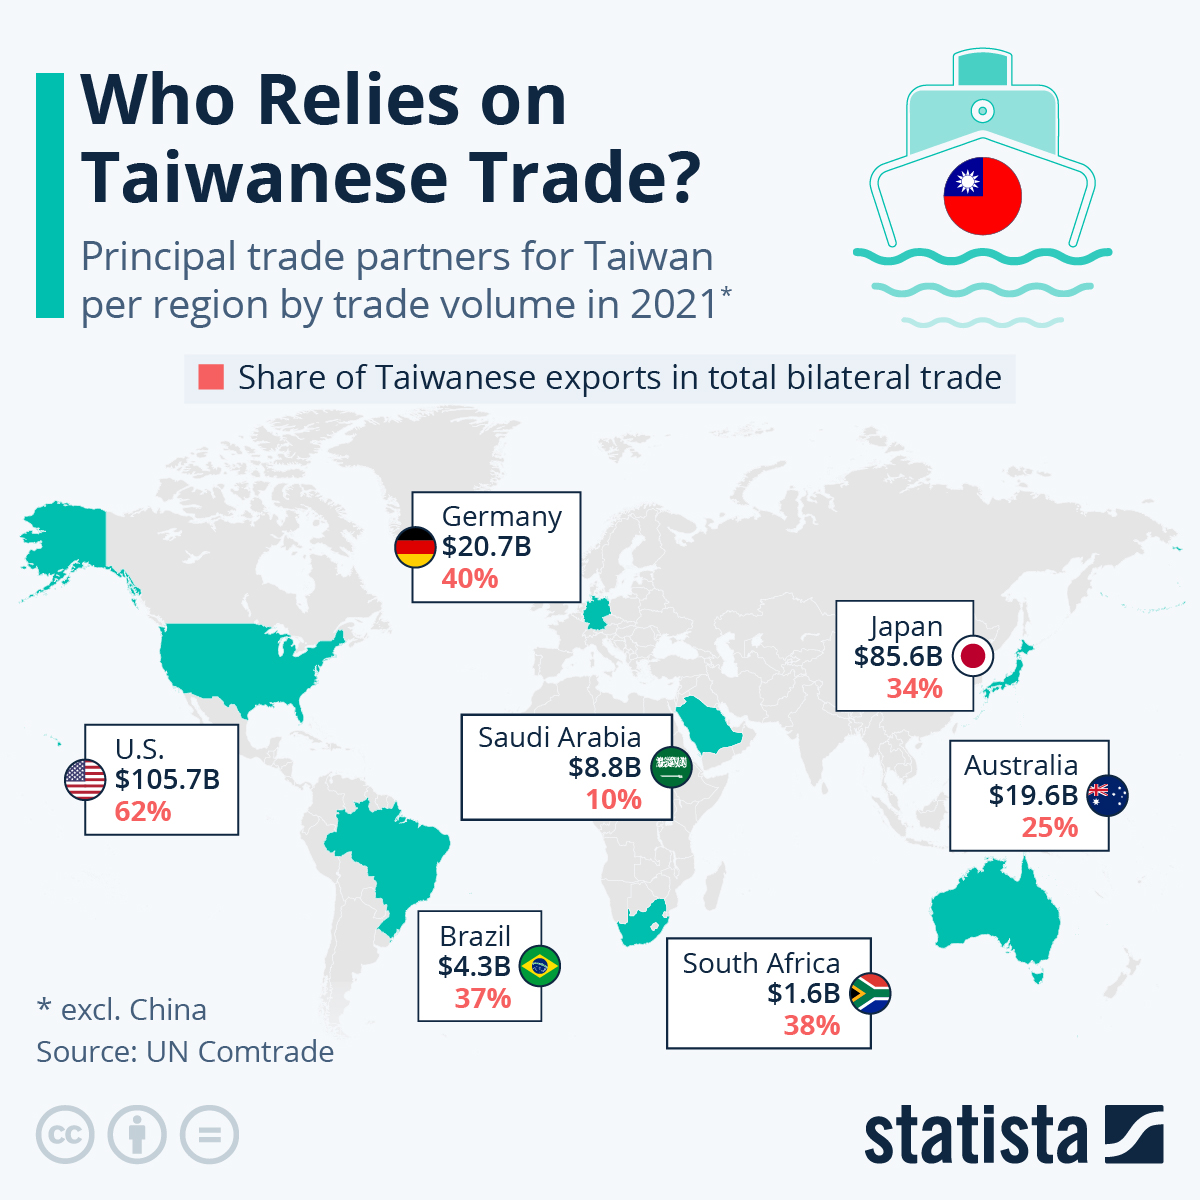 Największy partner handlowy Tajwanu (nie licząc Chin/HK >40% całości) w 2021